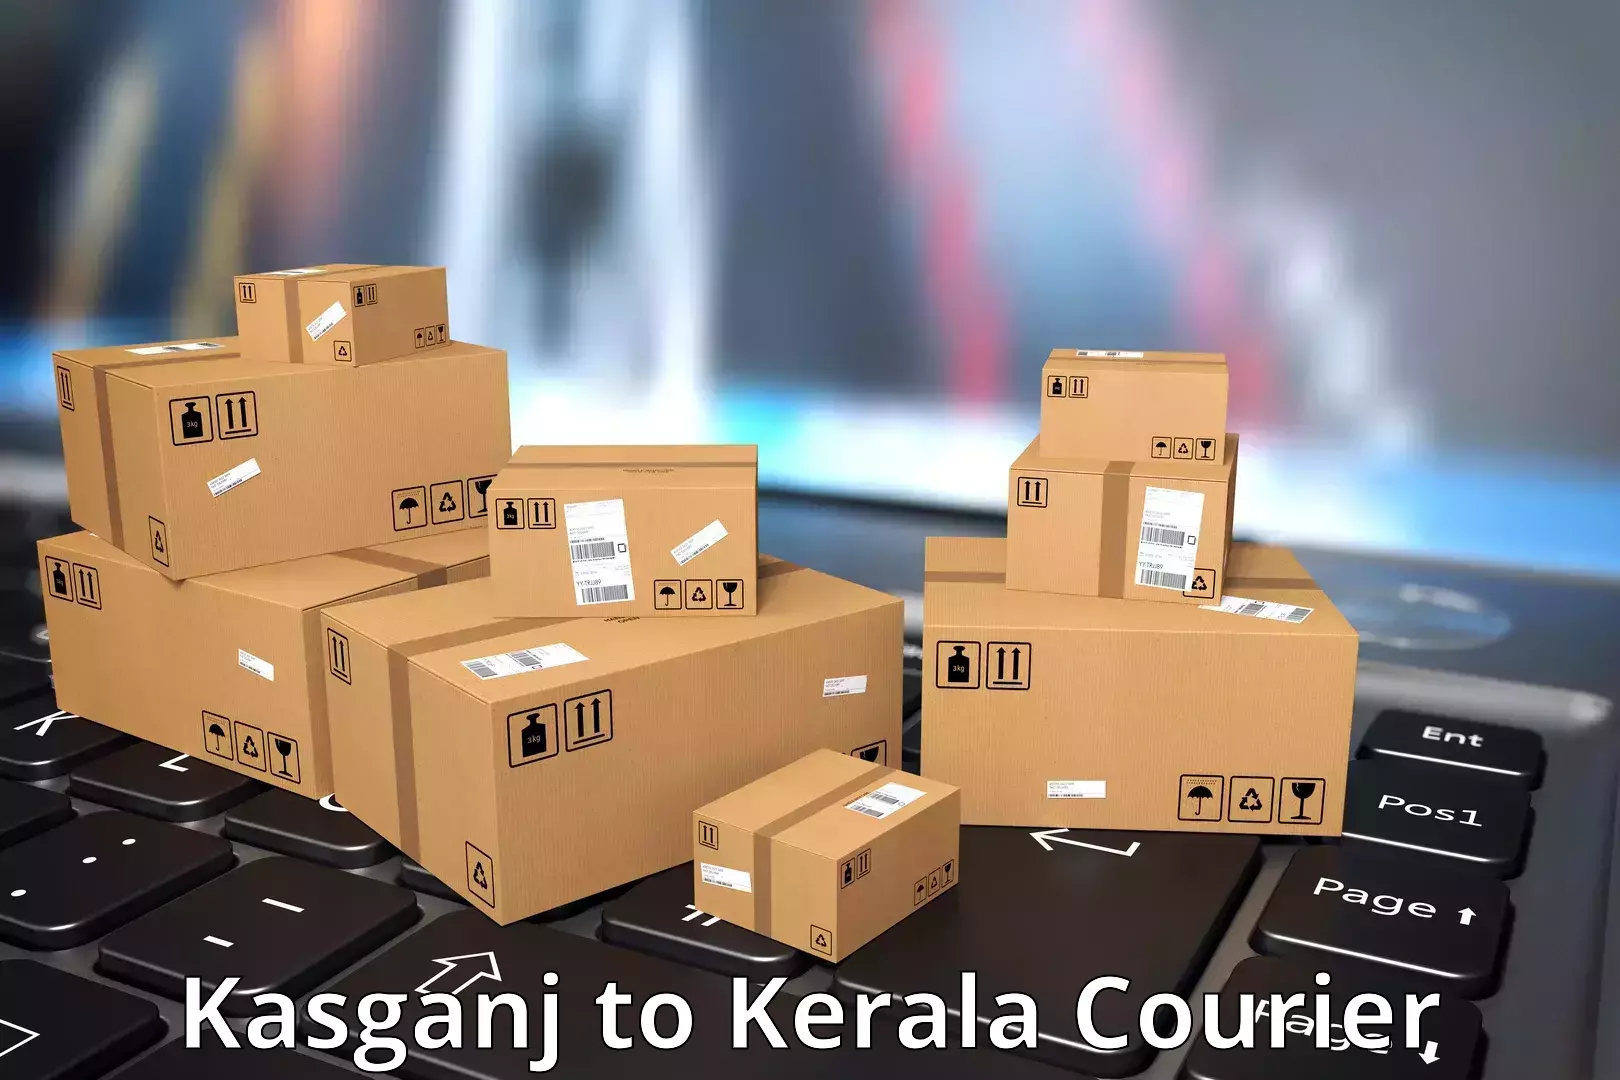 Next day courier Kasganj to Kattappana